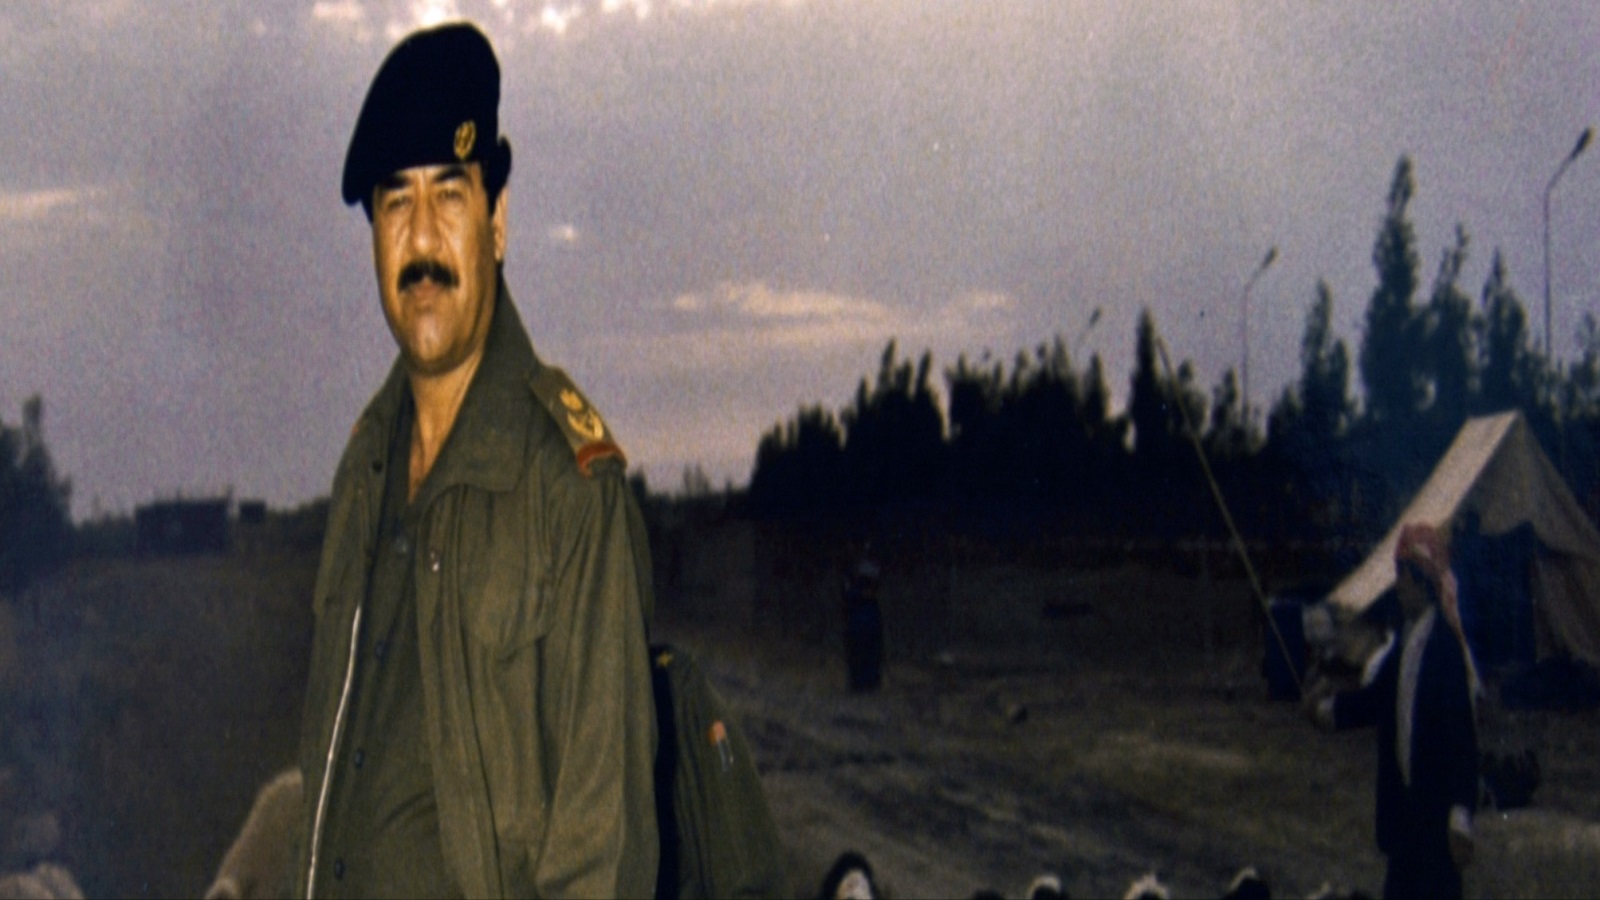 ظل نظام صدام حسين مصراً على نيل استقلالٍ تام ومحاولة بناء قوةٍ رادعةٍ ومقابلةٍ لقوى الشر حسب وصفه إلى أن وصل منهكاً إلى معركته الأخيرة